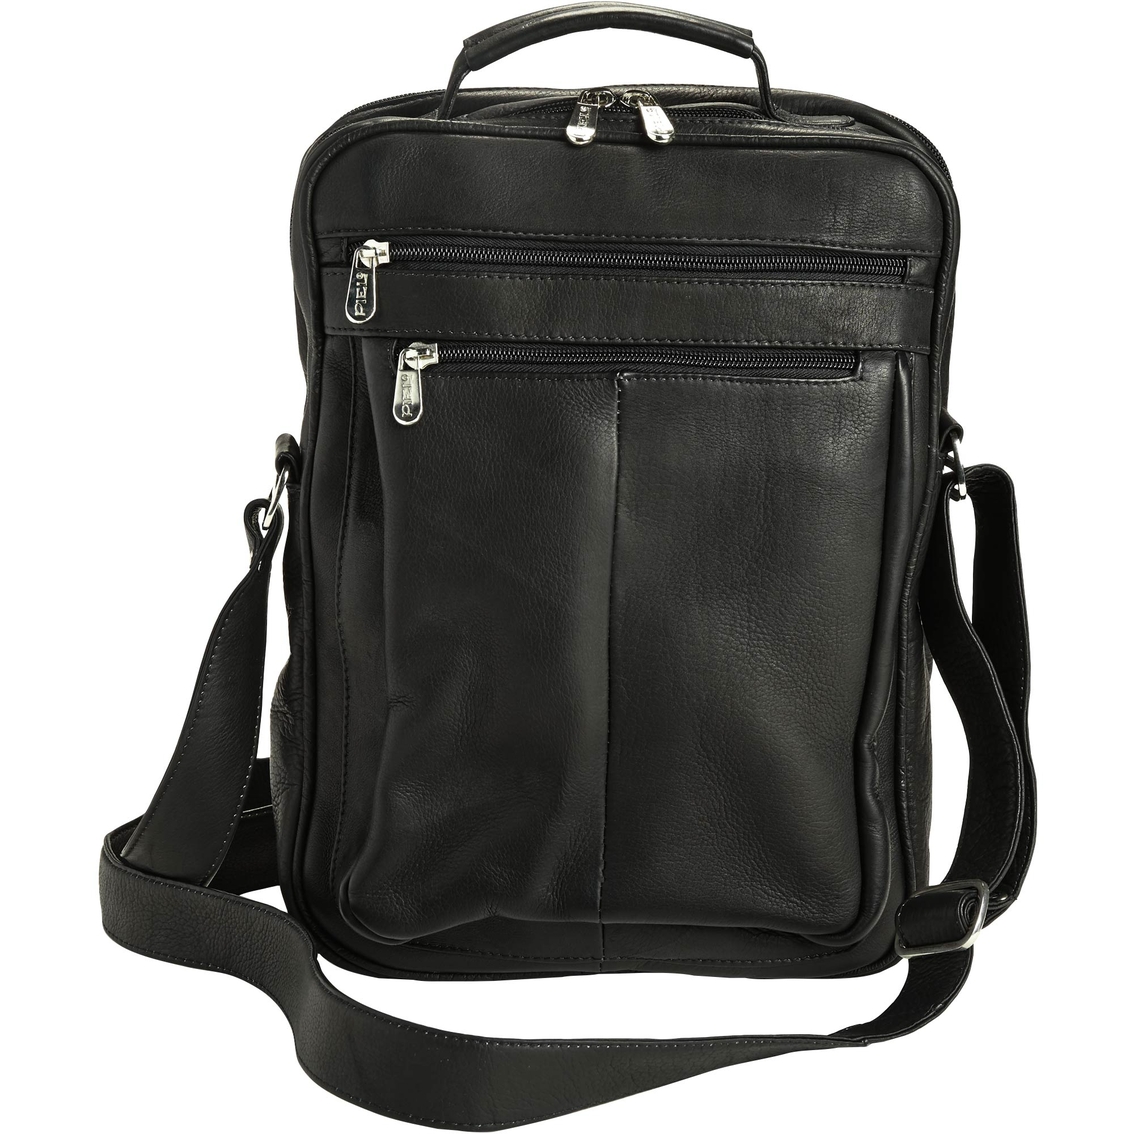 Piel Leather Laptop Shoulder Bag | Computer Bags & Cases | Electronics ...